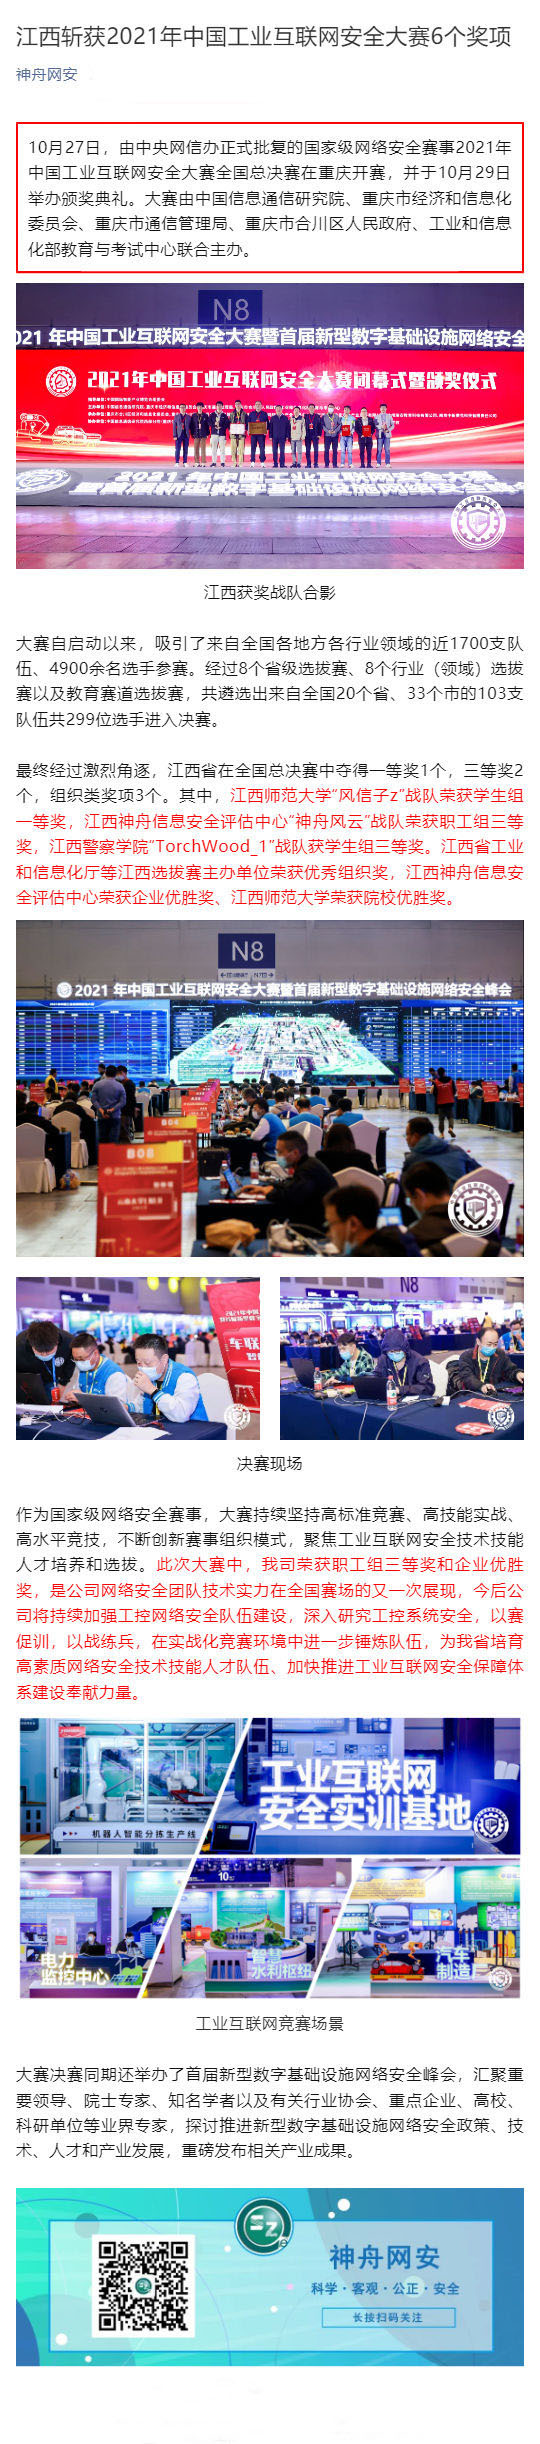 江西斩获2021年中国工业互联网安全大赛6个奖项_壹伴长图1.jpg